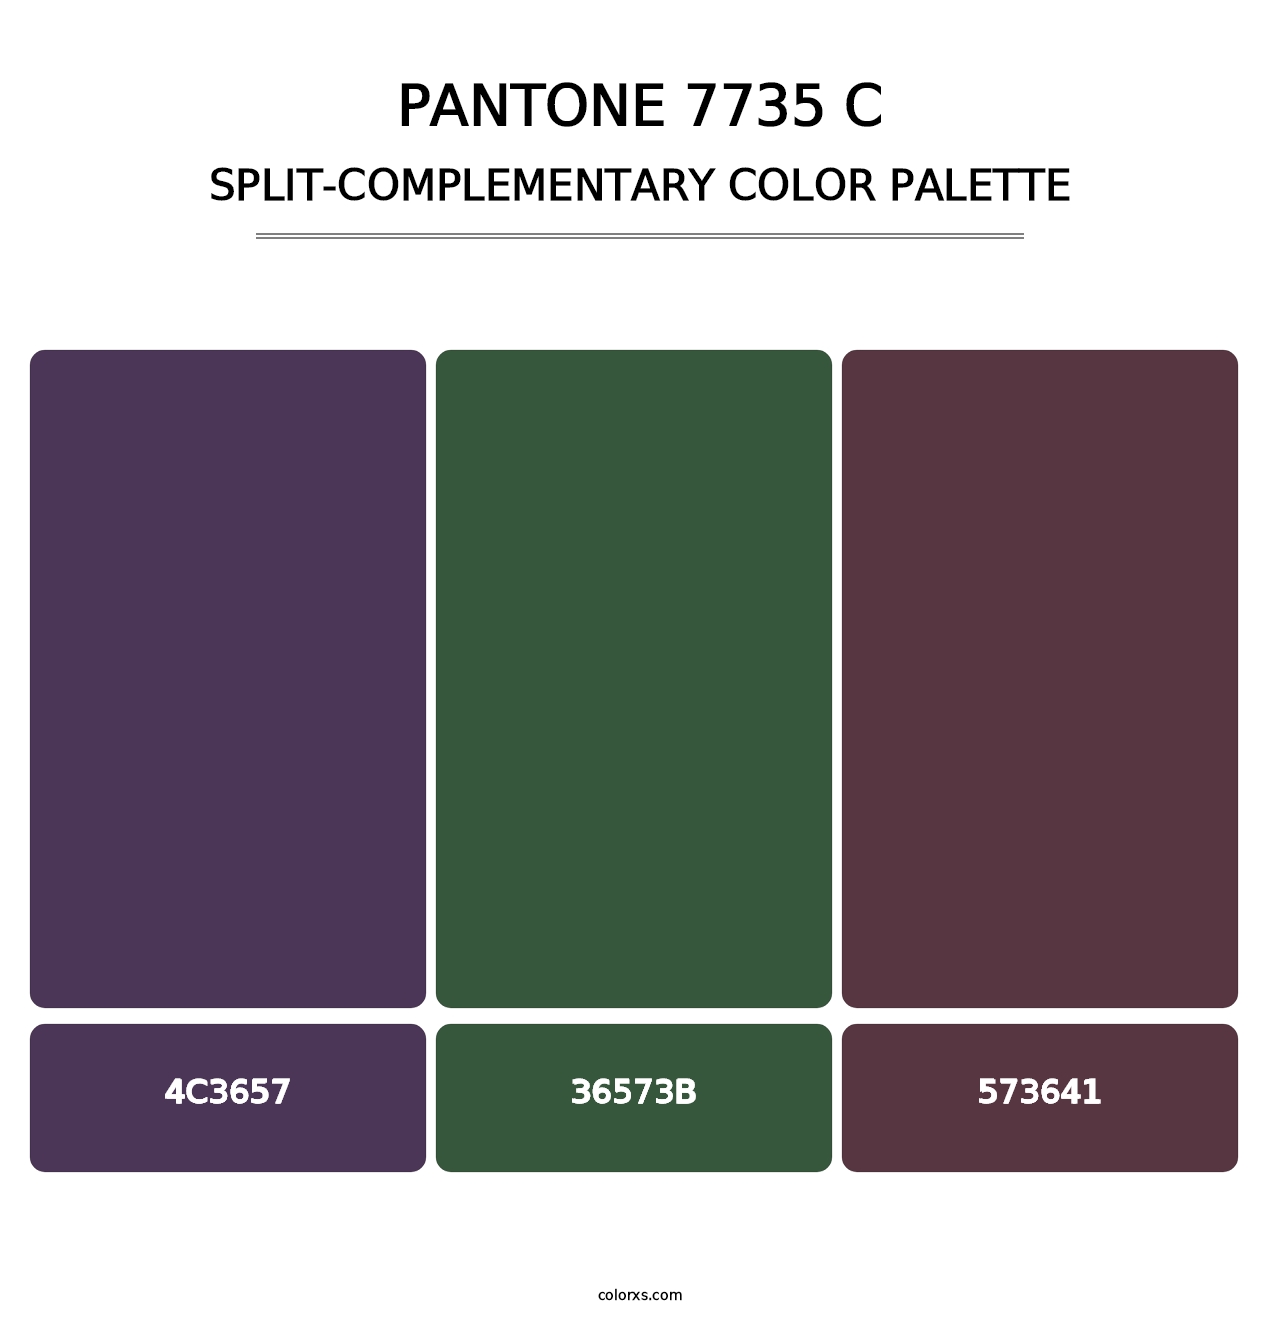 PANTONE 7735 C - Split-Complementary Color Palette